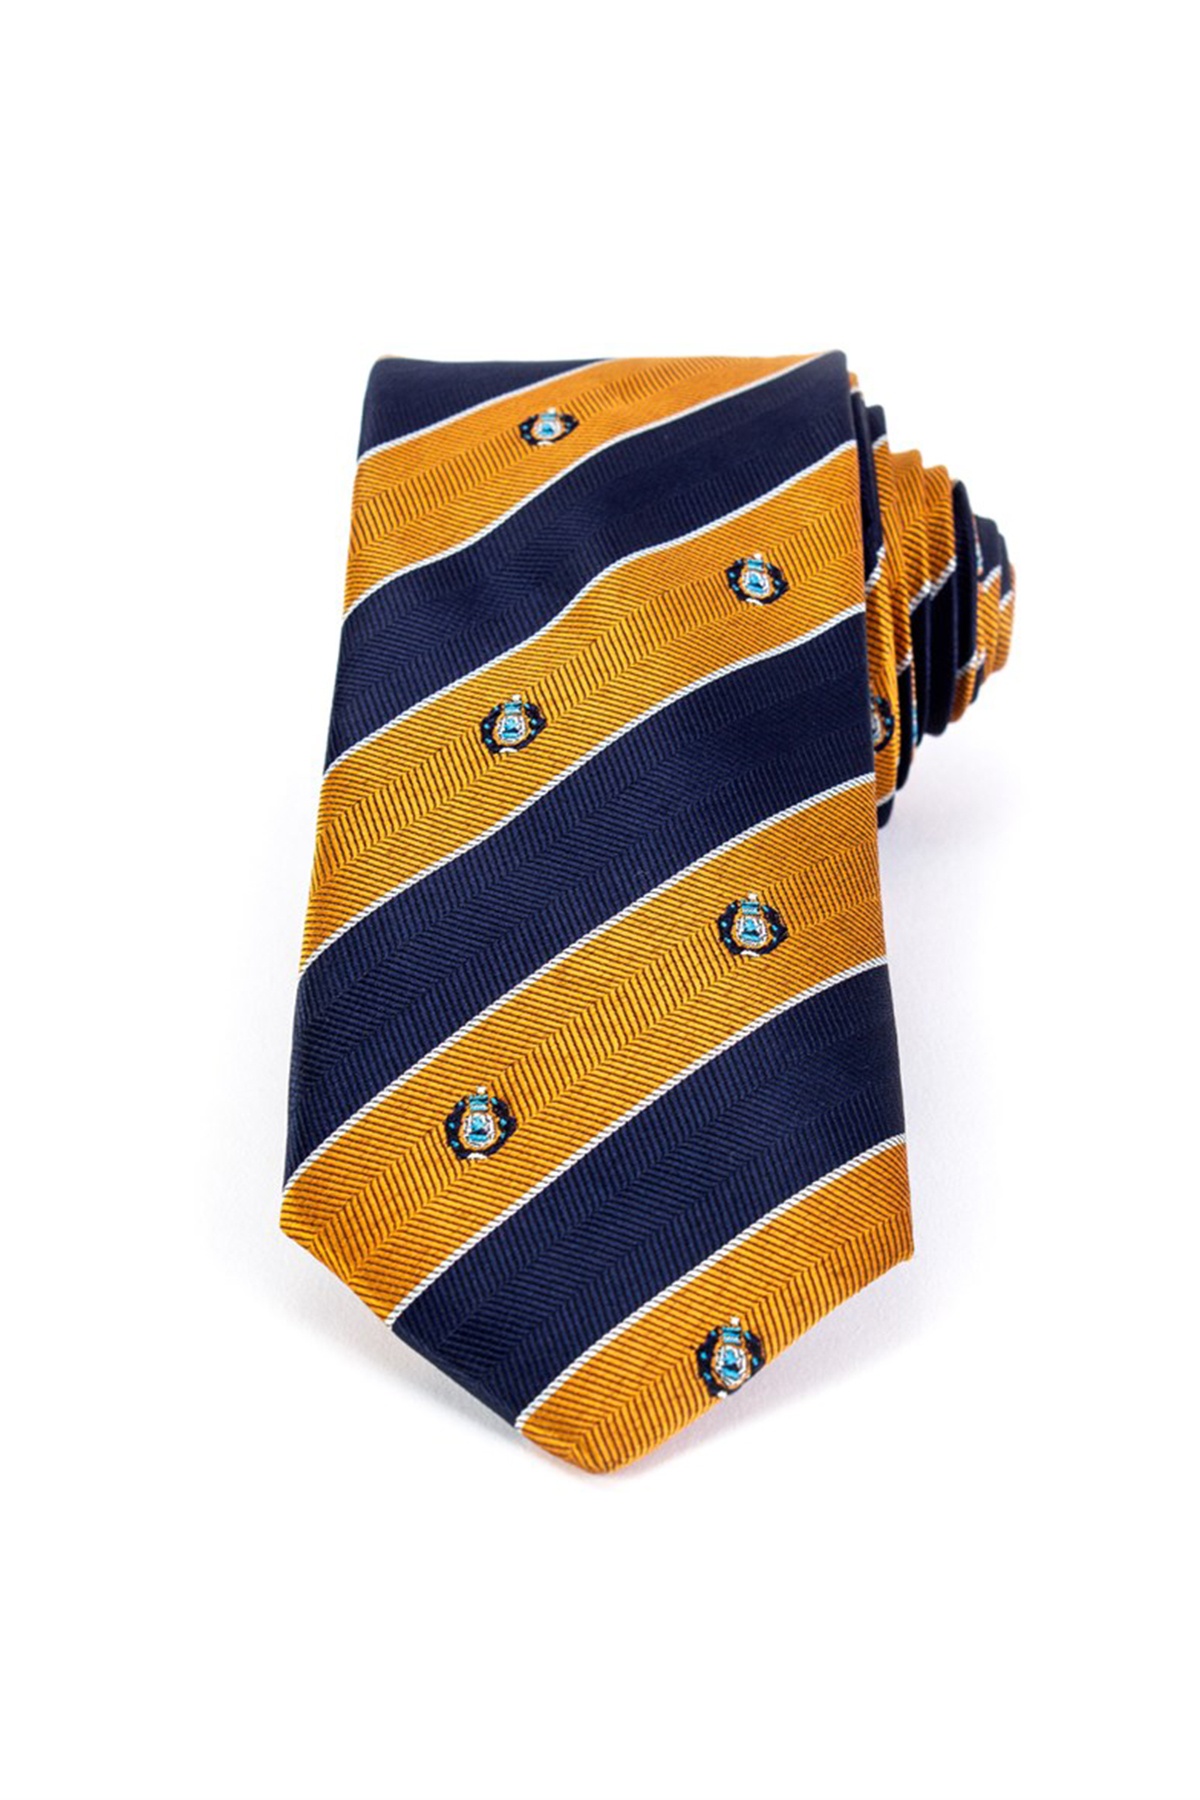 Kék-sárga csíkos klasszikus nyakkendő apró mintákkal